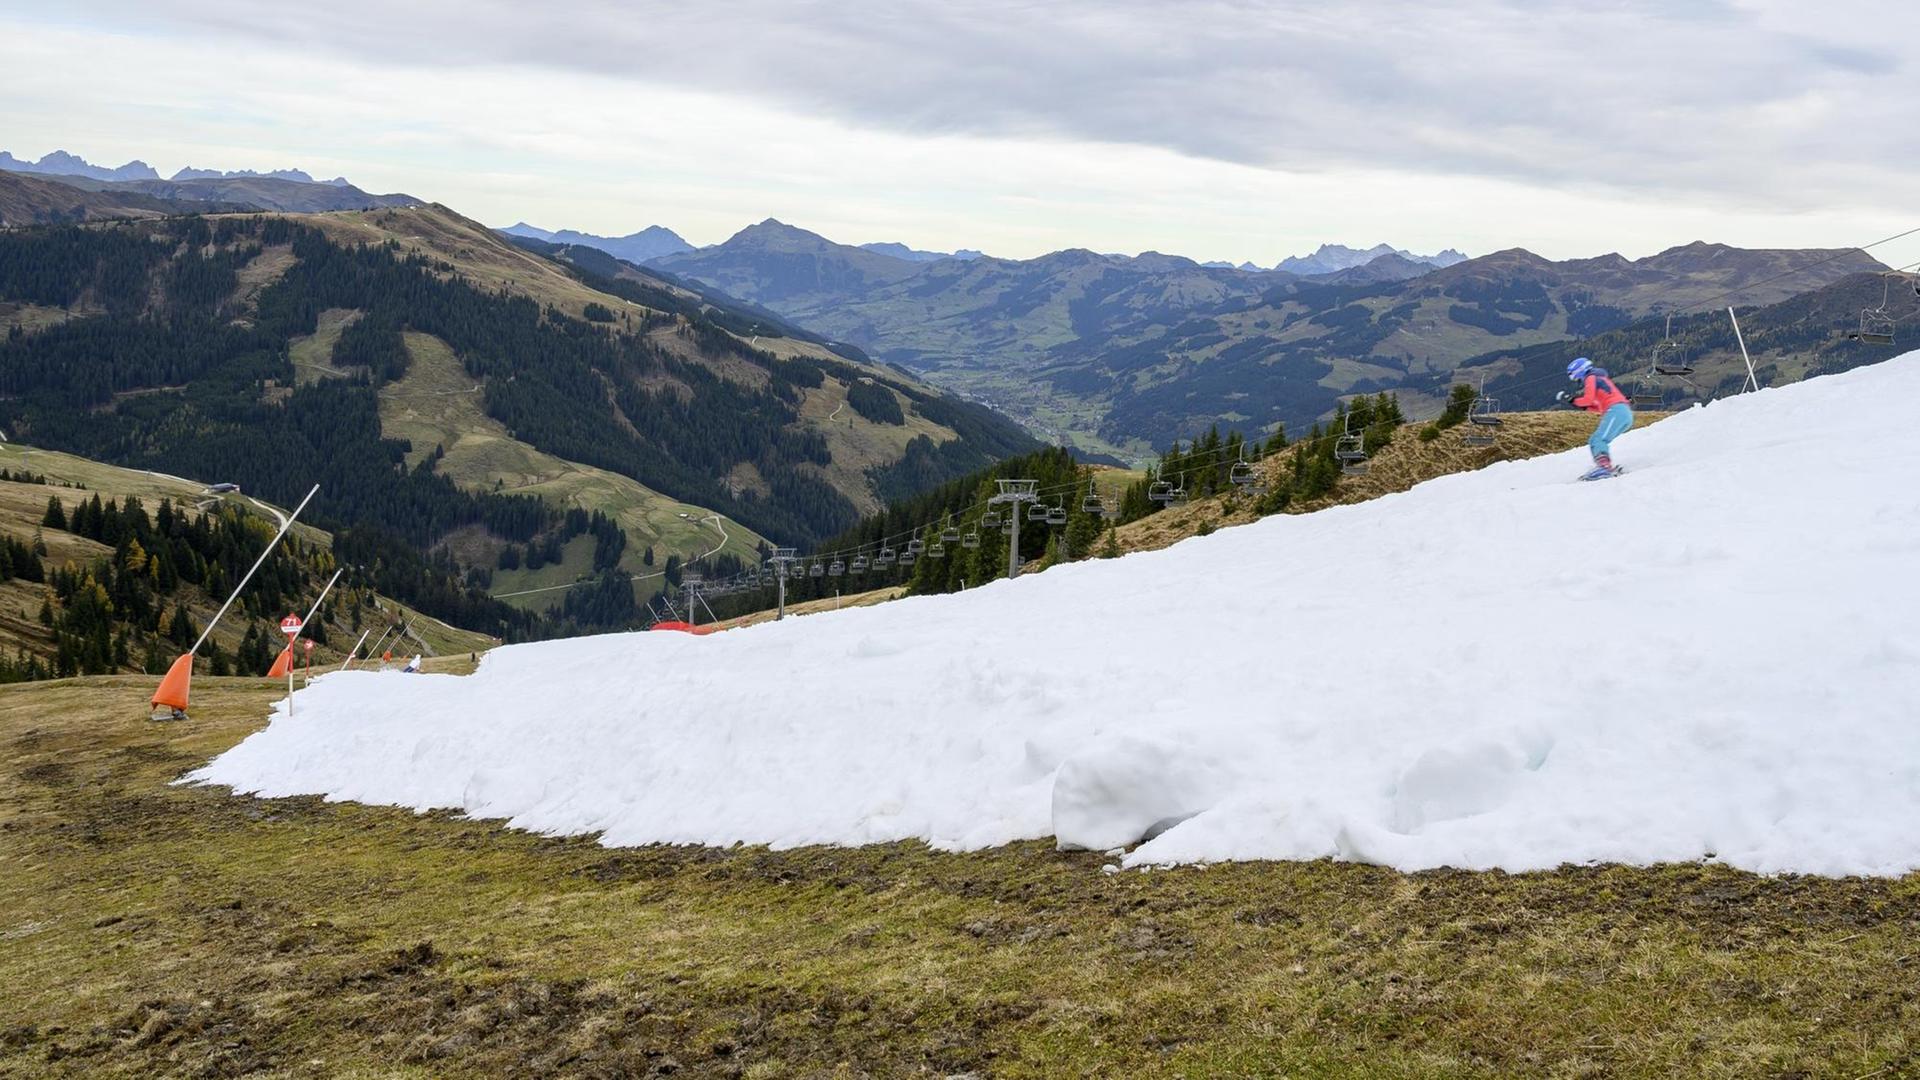 Das Bild zeigt einen Skifahrer auf einem weißen Kunstschneeband in einer grünen und braunen Herbstlandschaft. Aufgenommen im Skigebiet Resterhoehe von Kitzbühel bei Mittersill, Österreich. Der frühe Start der Skisaison auf einer Kitzbüheler Piste am Wochenende löste eine hitzige Debatte zwischen Klimaaktivisten und Beamten im berühmten österreichischen Ferienort aus.